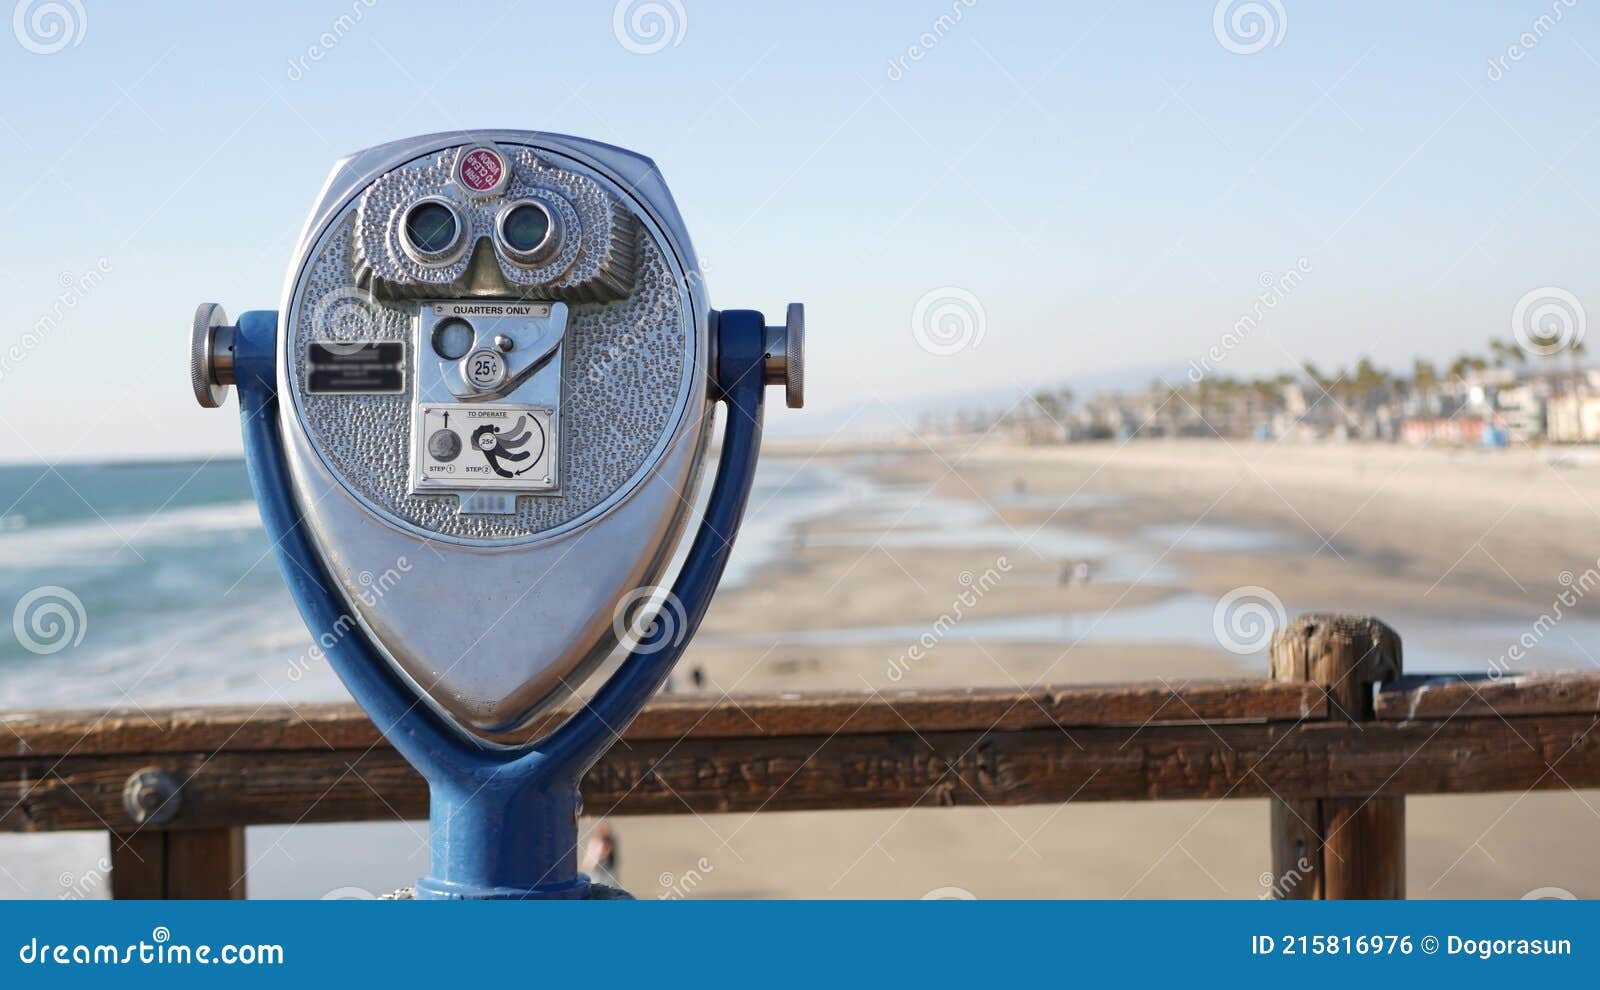 Metallische Stationäre Beobachtung Turm Betrachter Fernglas California Pier  Usa. Münzfernrohr Redaktionelles Foto - Bild von sommerzeit, küstenlinie:  215816976